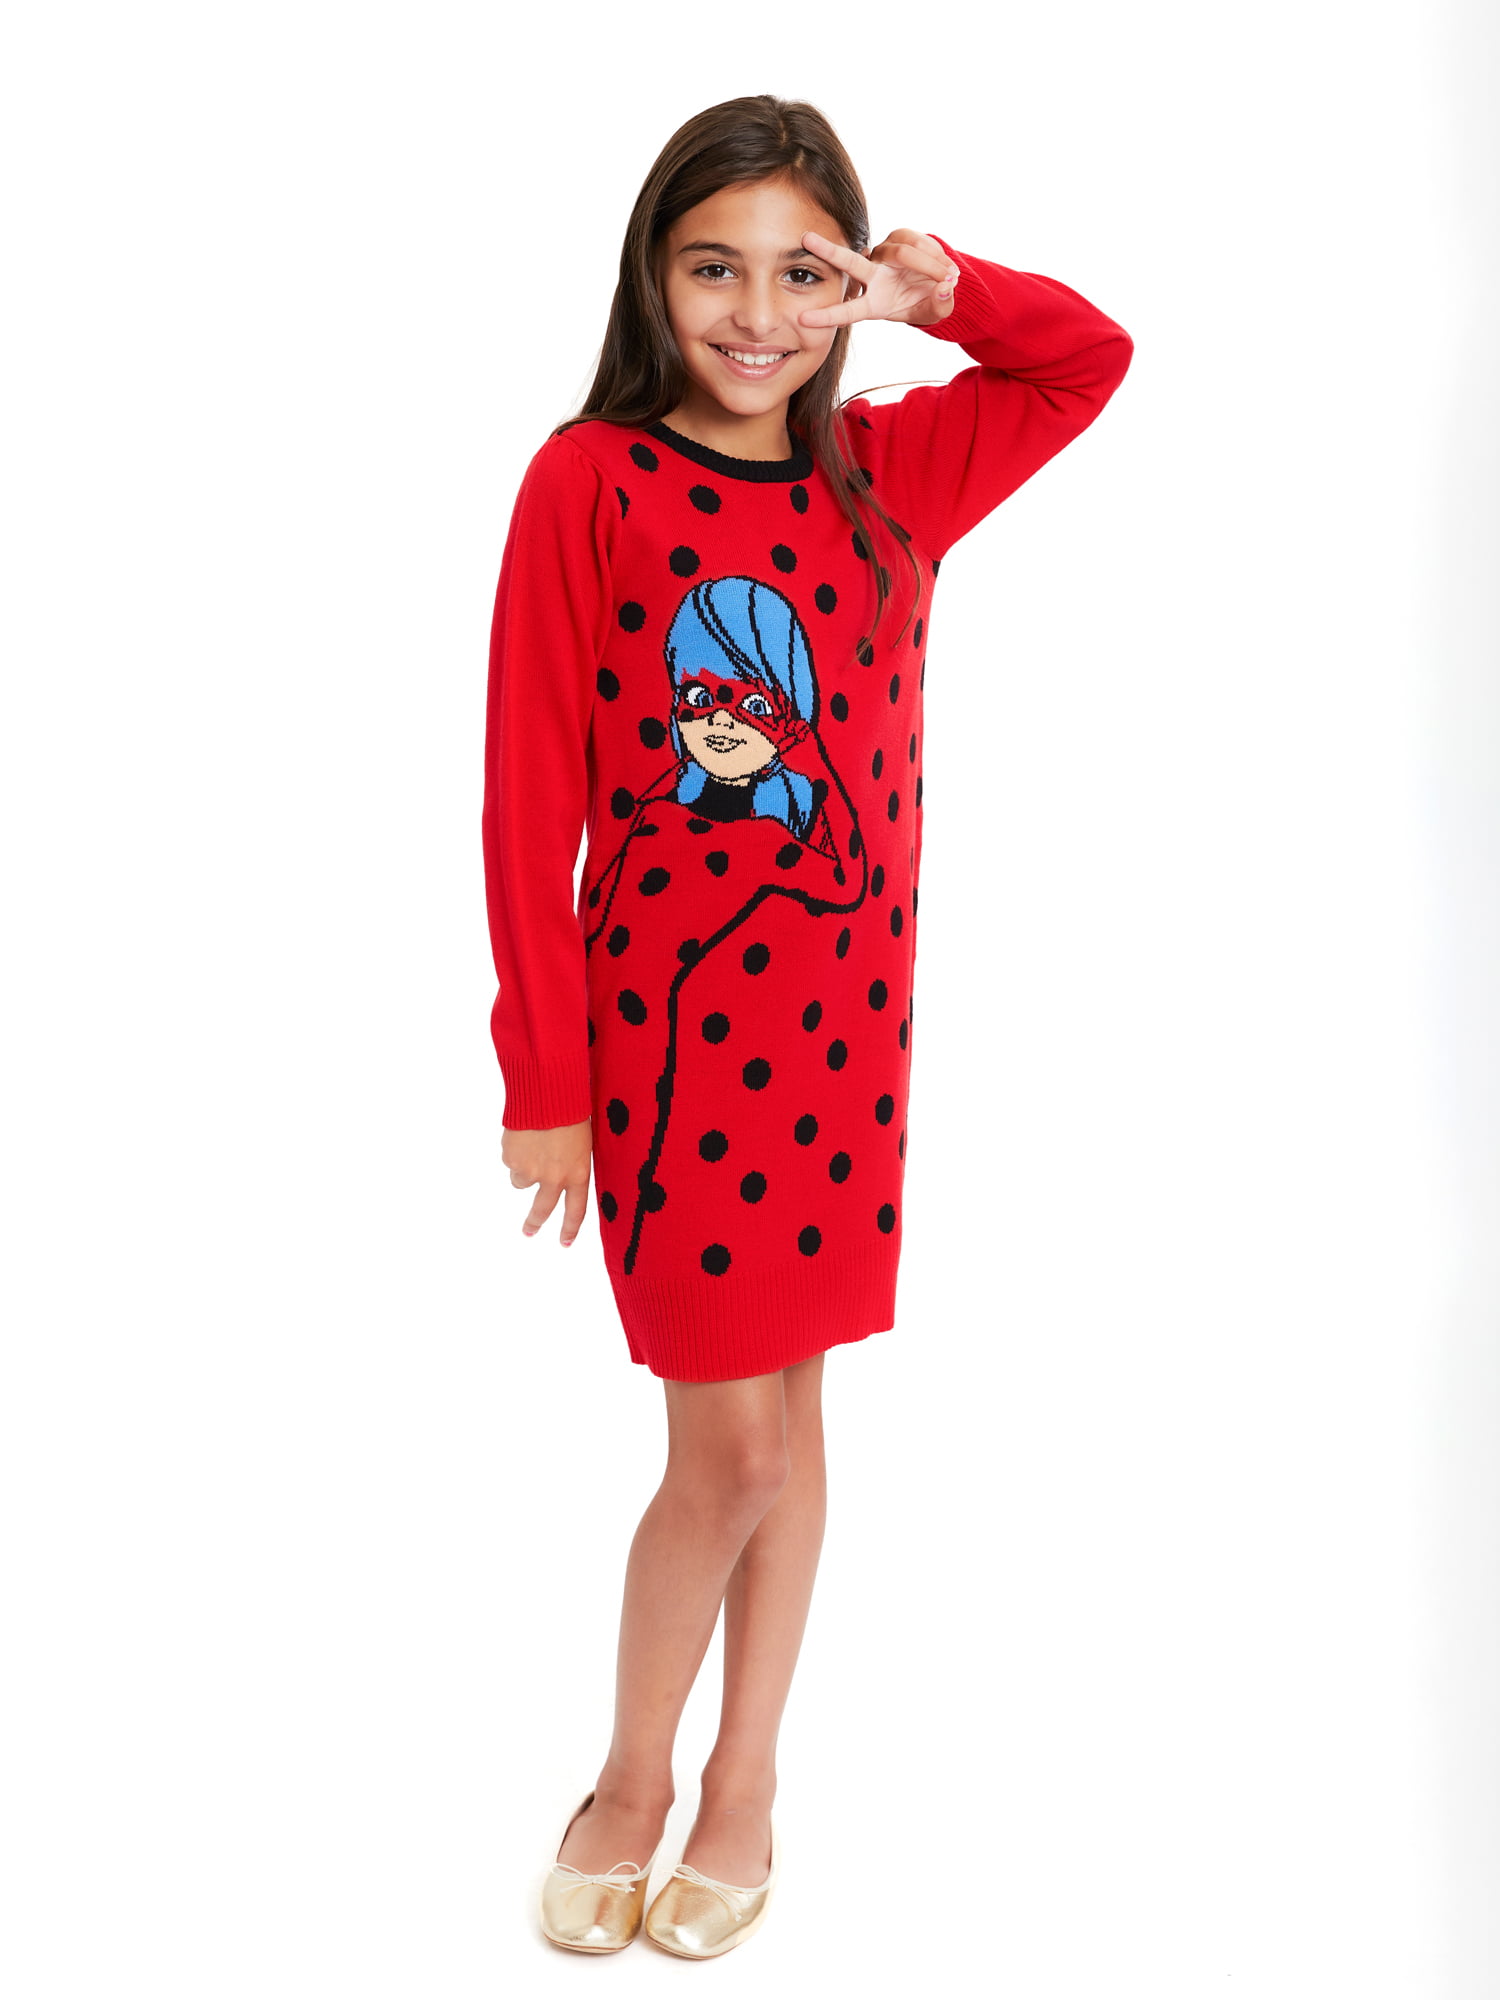 Miraculous Ladybug Girls Play Dress, 2-Pack, Sizes 4-12